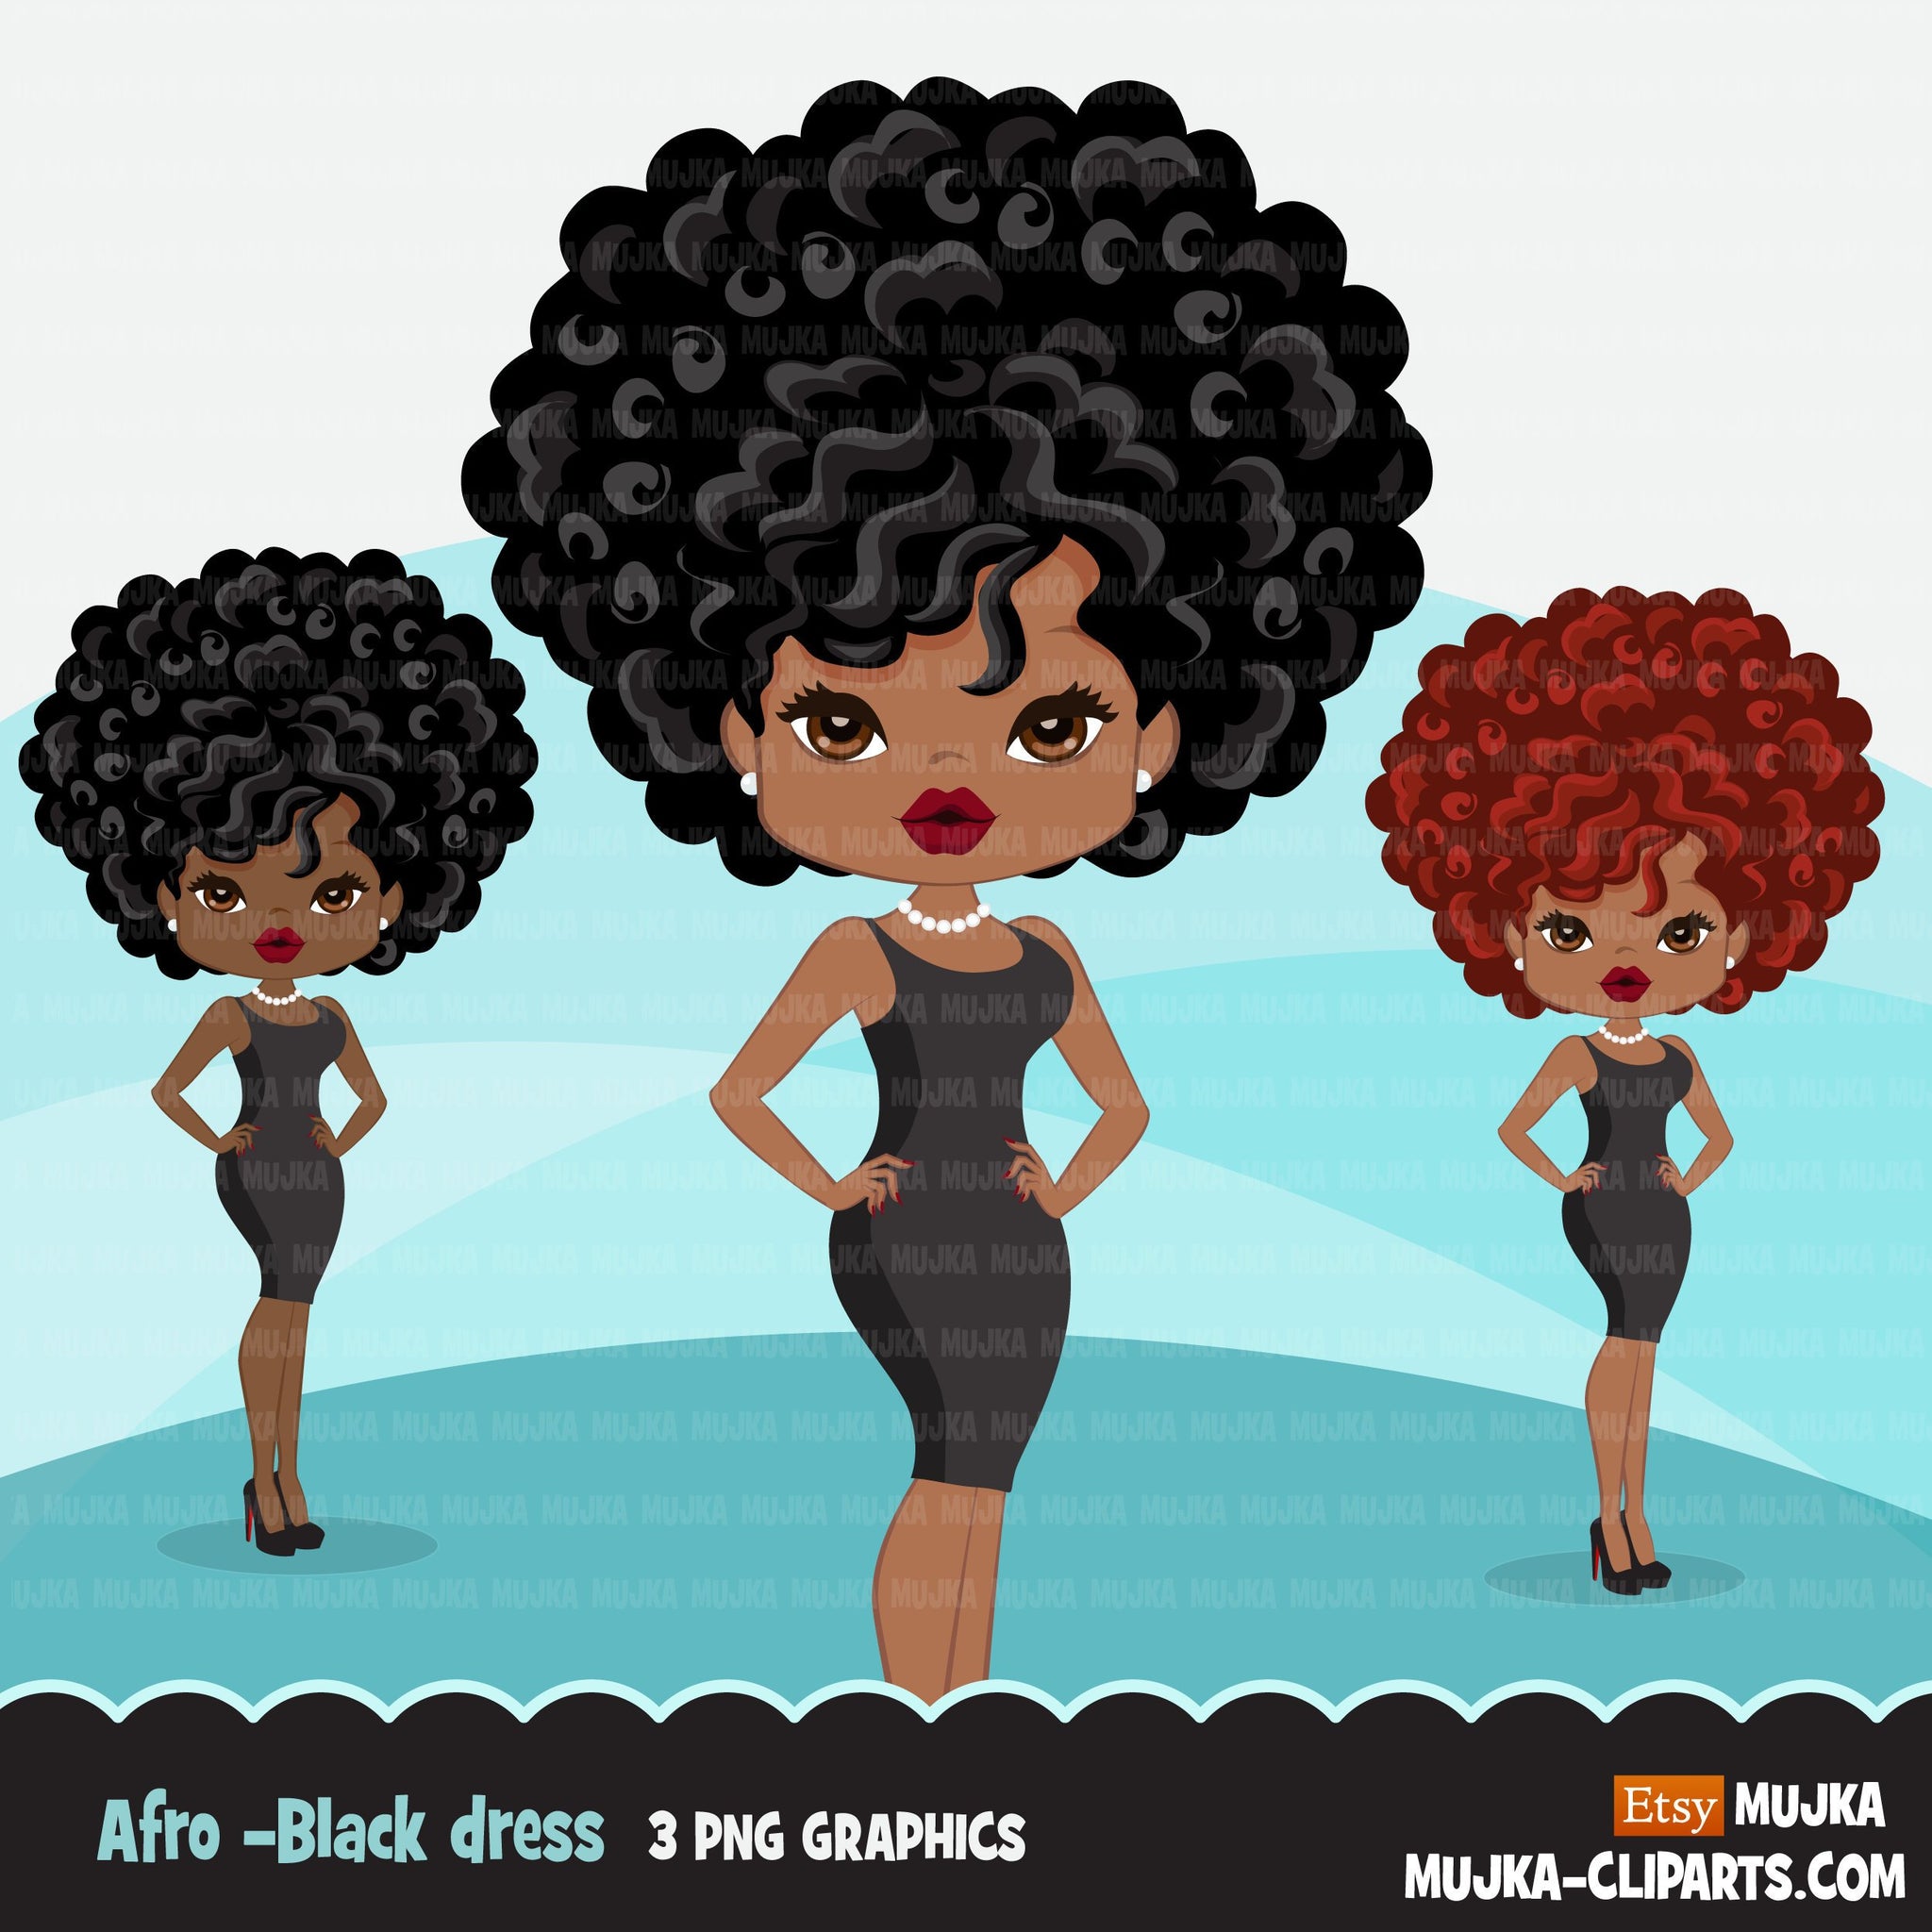 Clipart de mulher negra afro com minivestido preto, gráficos afro-americanos, imprimir e cortar designs de camisetas PNG, clipart de meninas negras